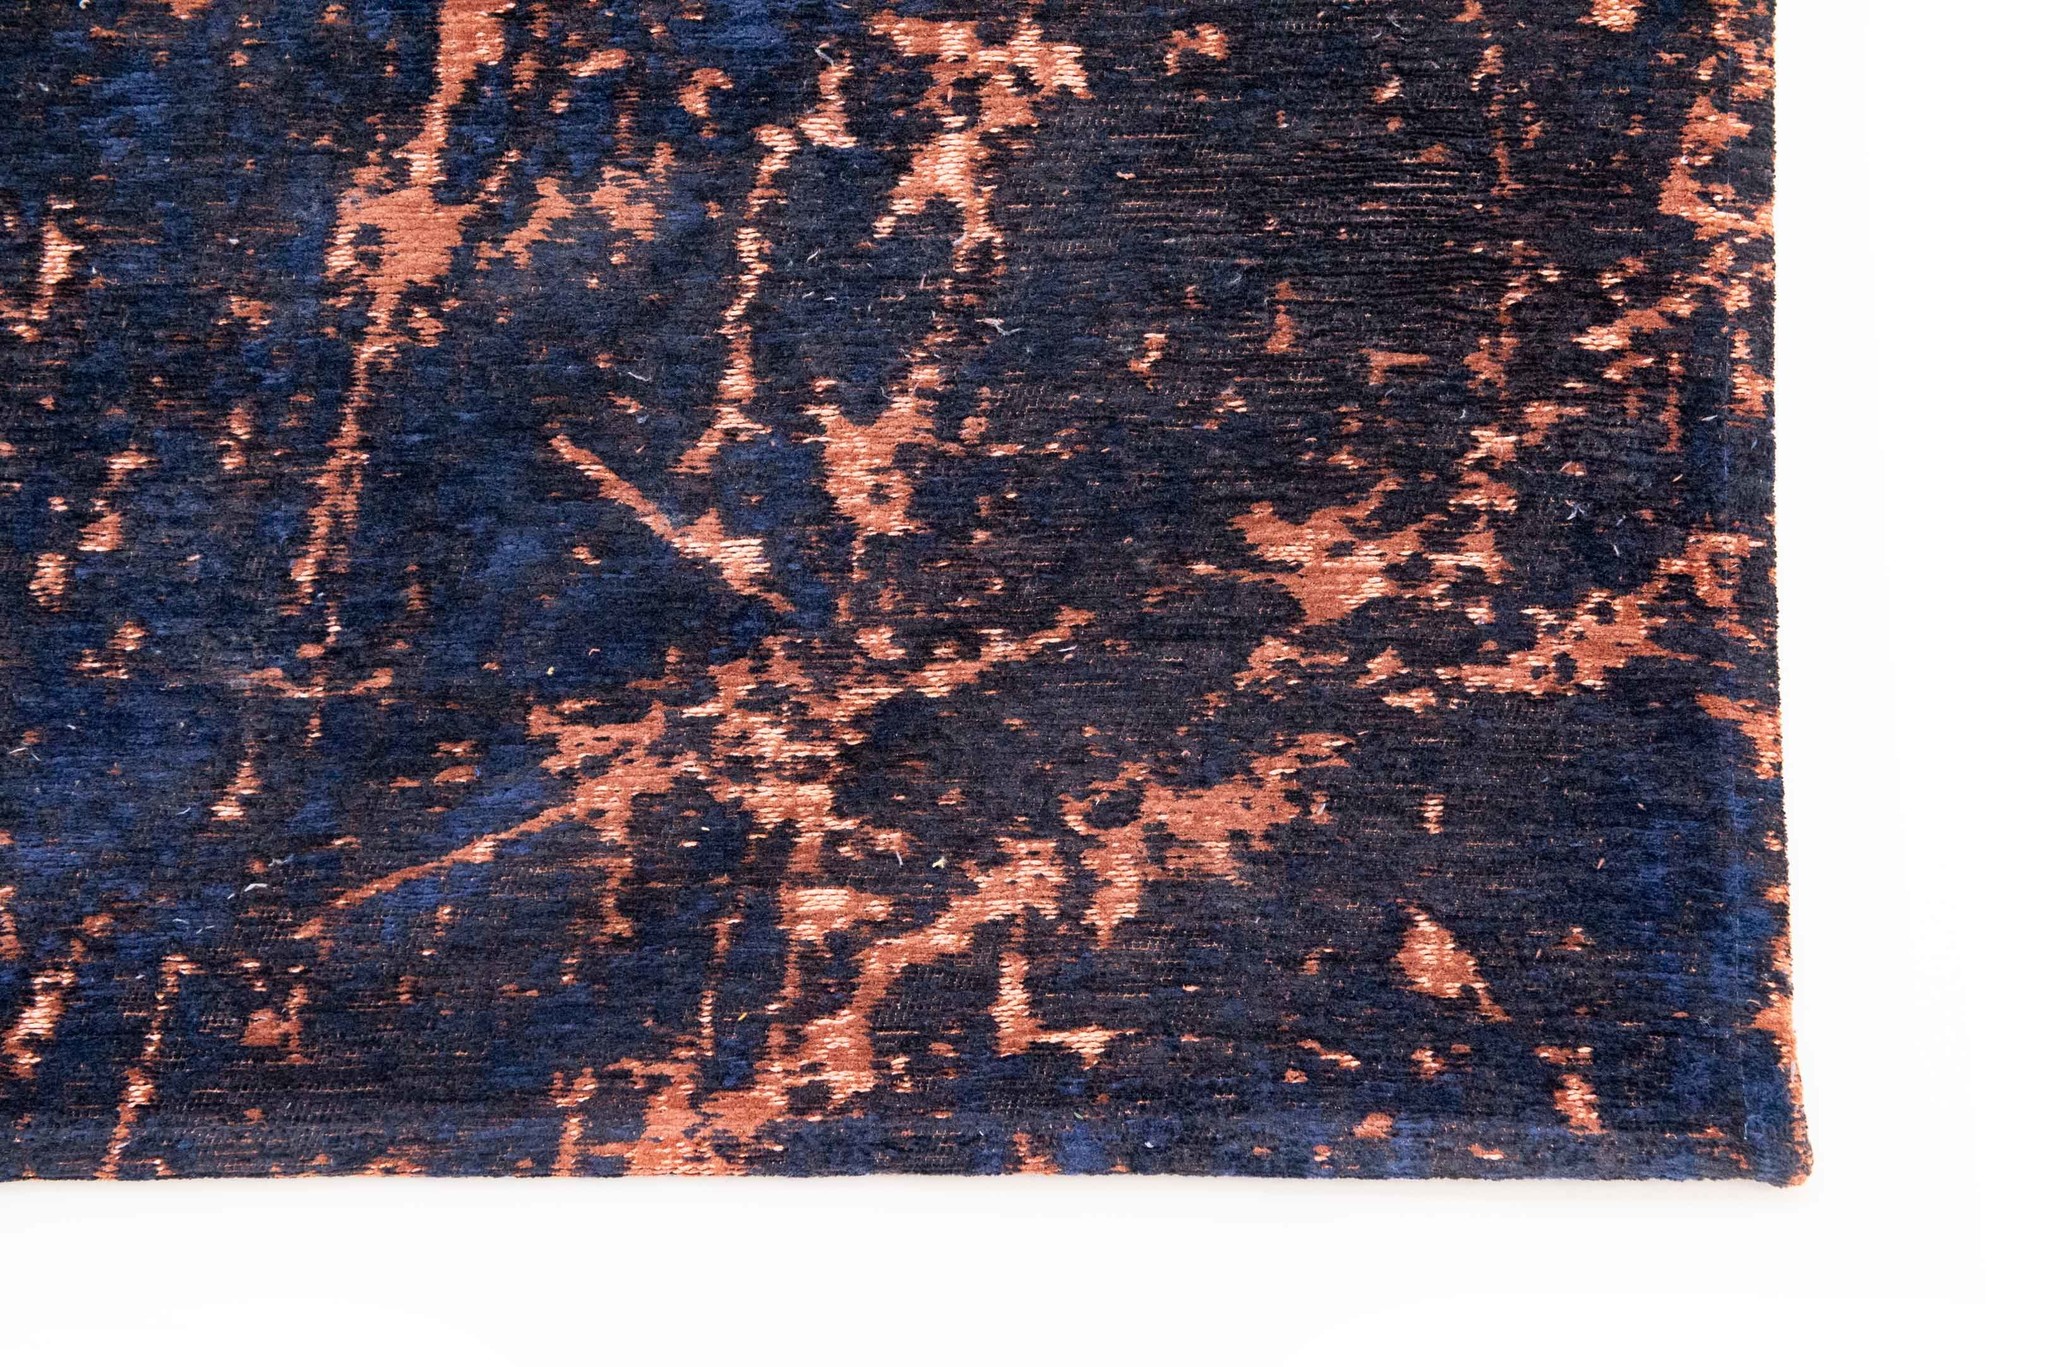 Art Black & Orange Belgian Rug ☞ Size: 5' 7" x 8' (170 x 240 cm)